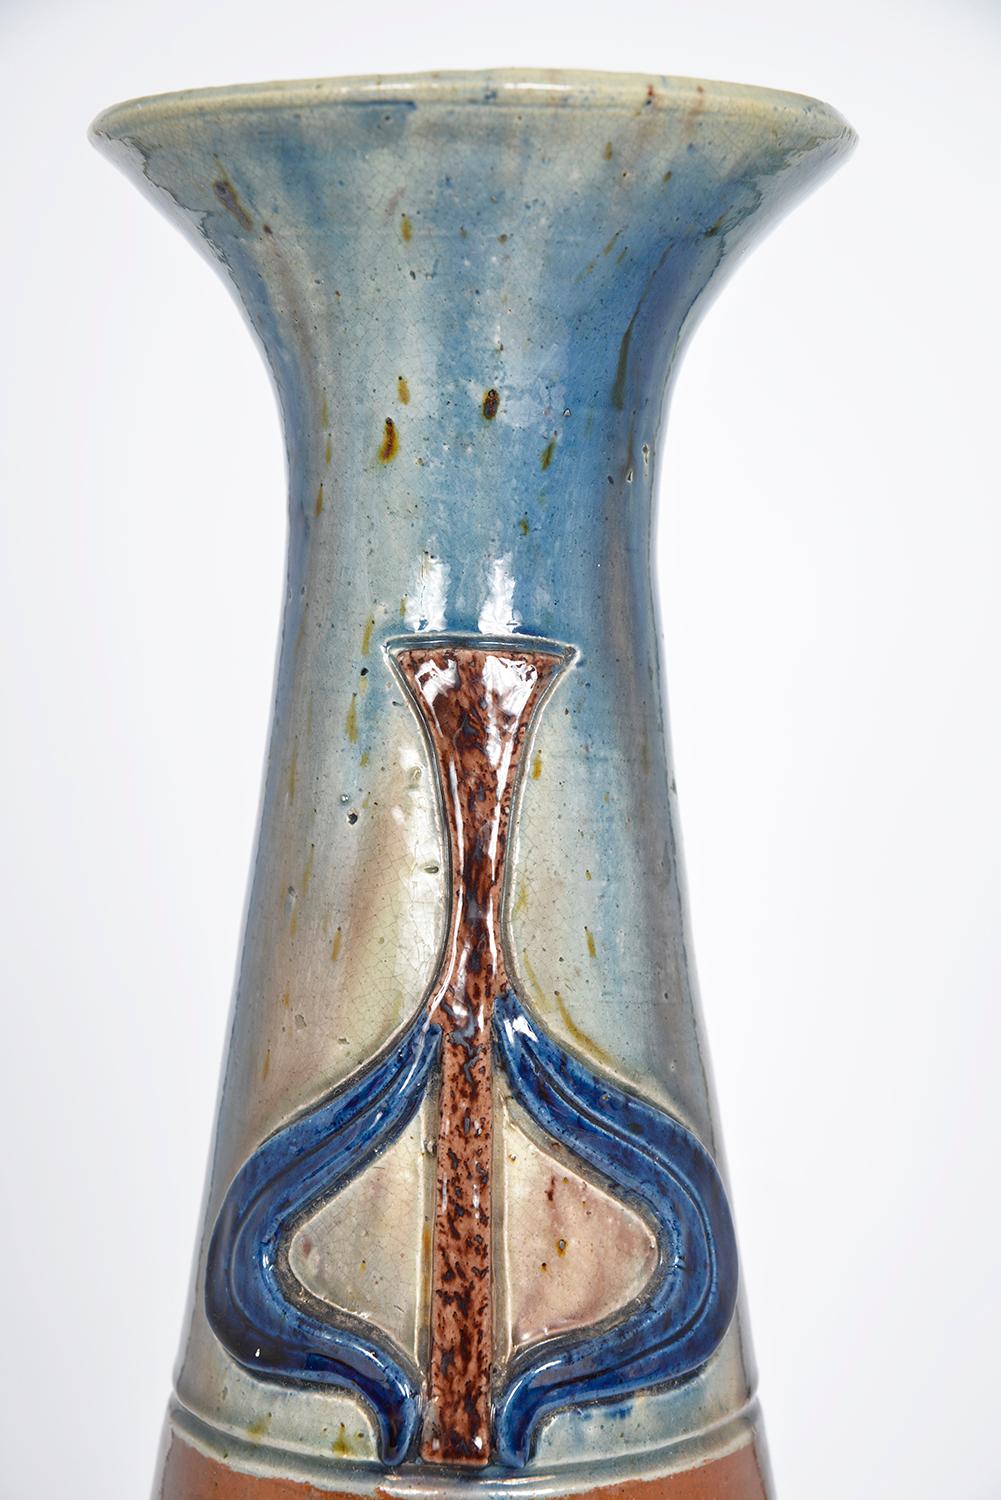 Flemish Studio Pottery Art Nouveau Drip Glazed Earthenware Vase 1900s Folk Art For Sale 2